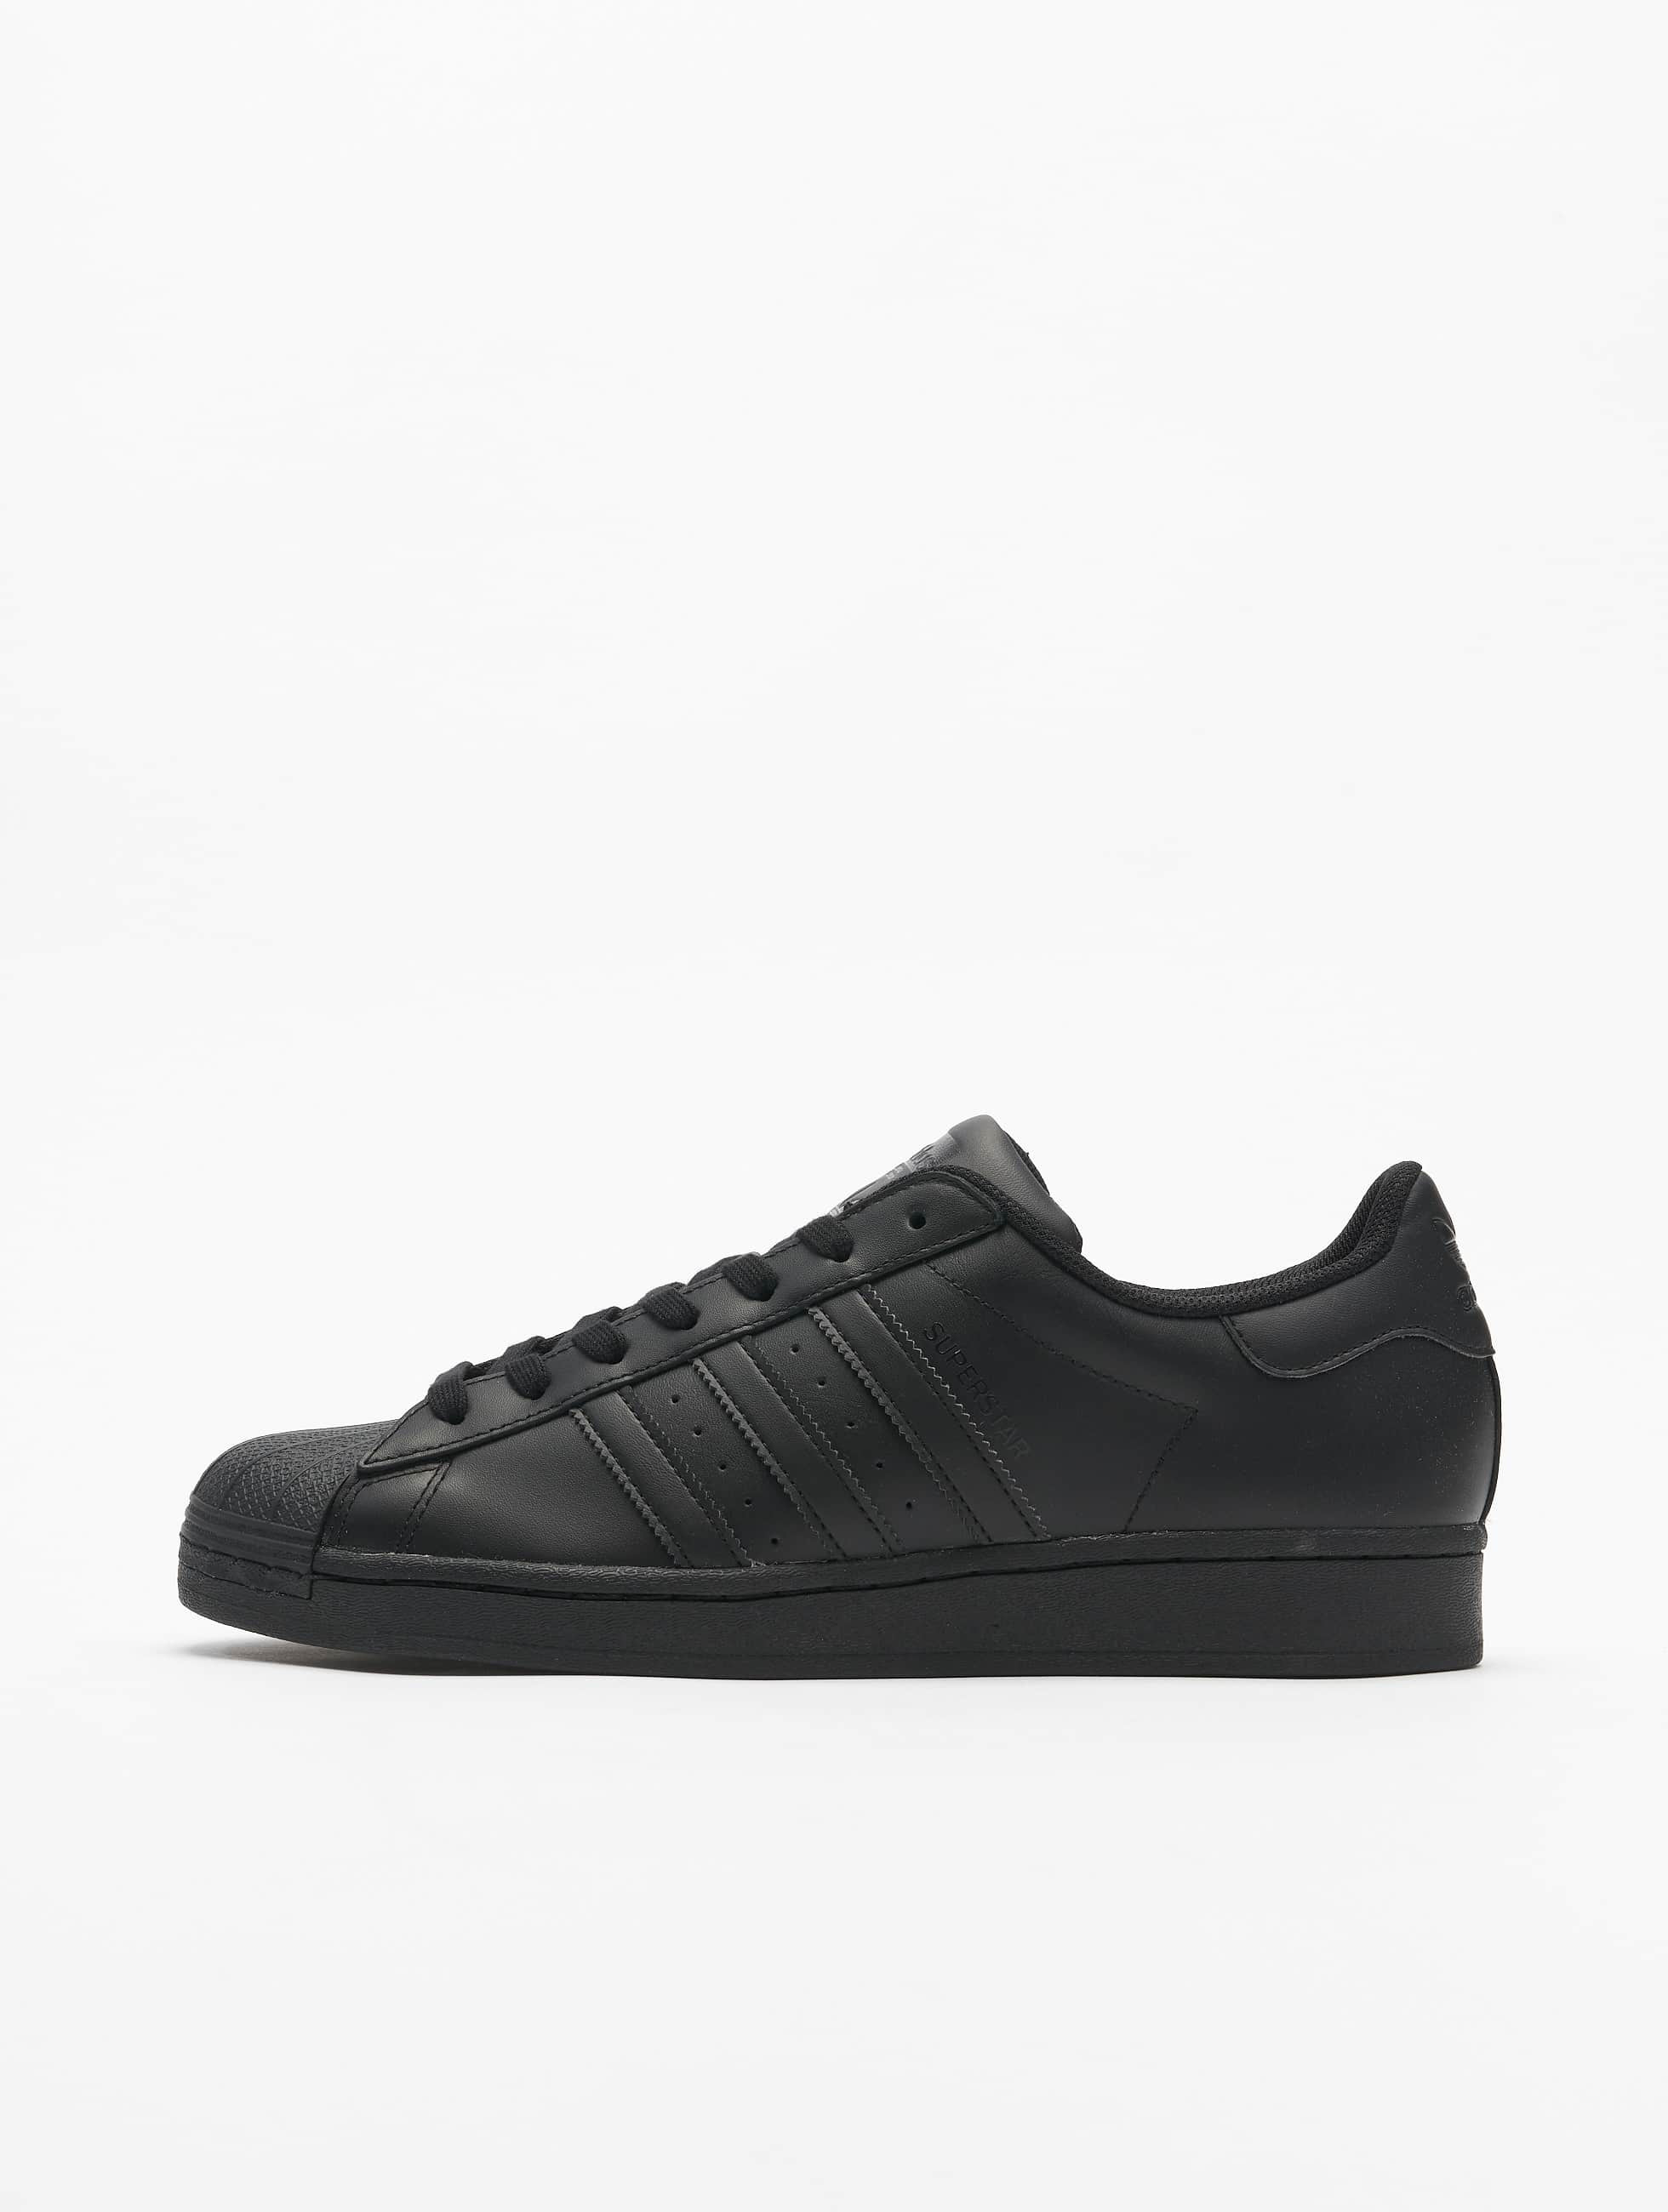 Tomaat Autonomie Overdreven adidas Originals schoen / sneaker Superstar in zwart 788127